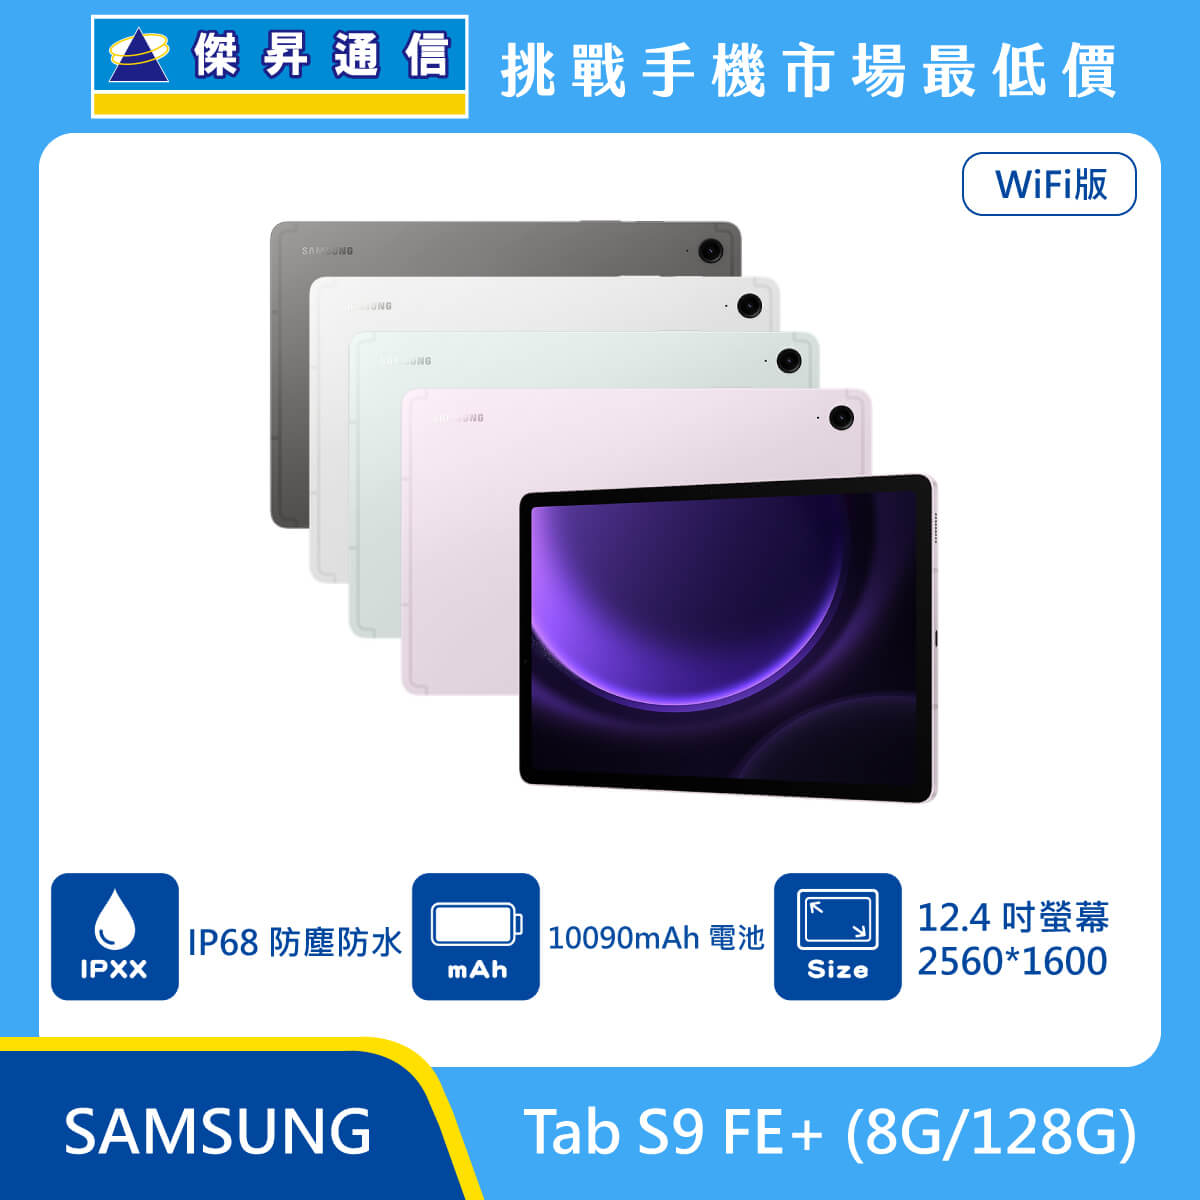 SAMSUNG 平板 Tab S9 FE+ Wi-Fi (8G/128G)